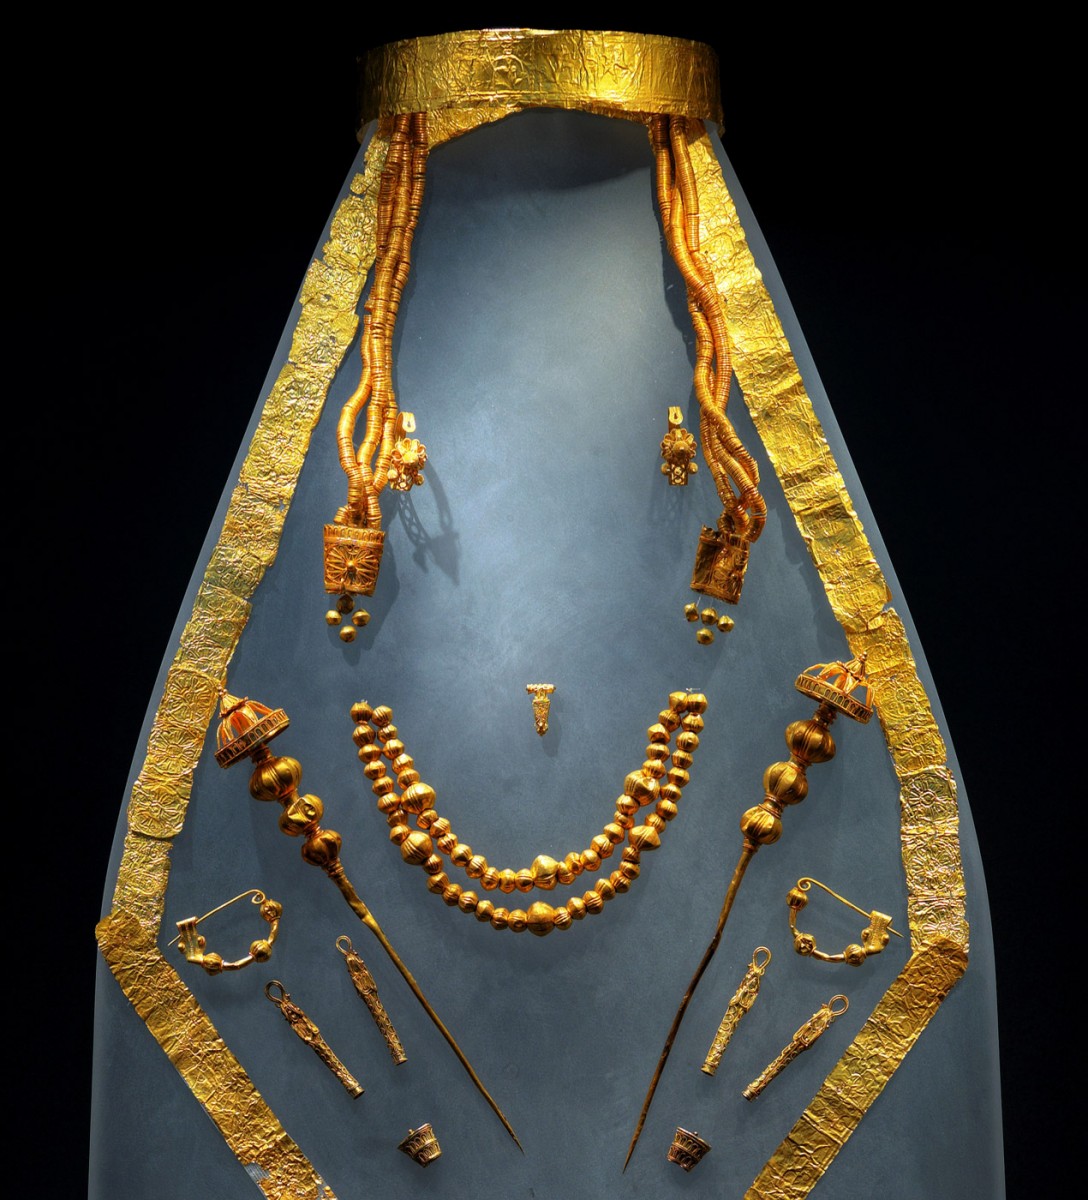 Η περίφημη «Δέσποινα των Αιγών», με το σύνολο των χρυσών κοσμημάτων και των χρυσών ελασμάτων που διακοσμούσαν τη φορεσιά της, αποτελεί ένα από τα κεντρικά εκθέματα (φωτ. ΙΖ´ ΕΠΚΑ).